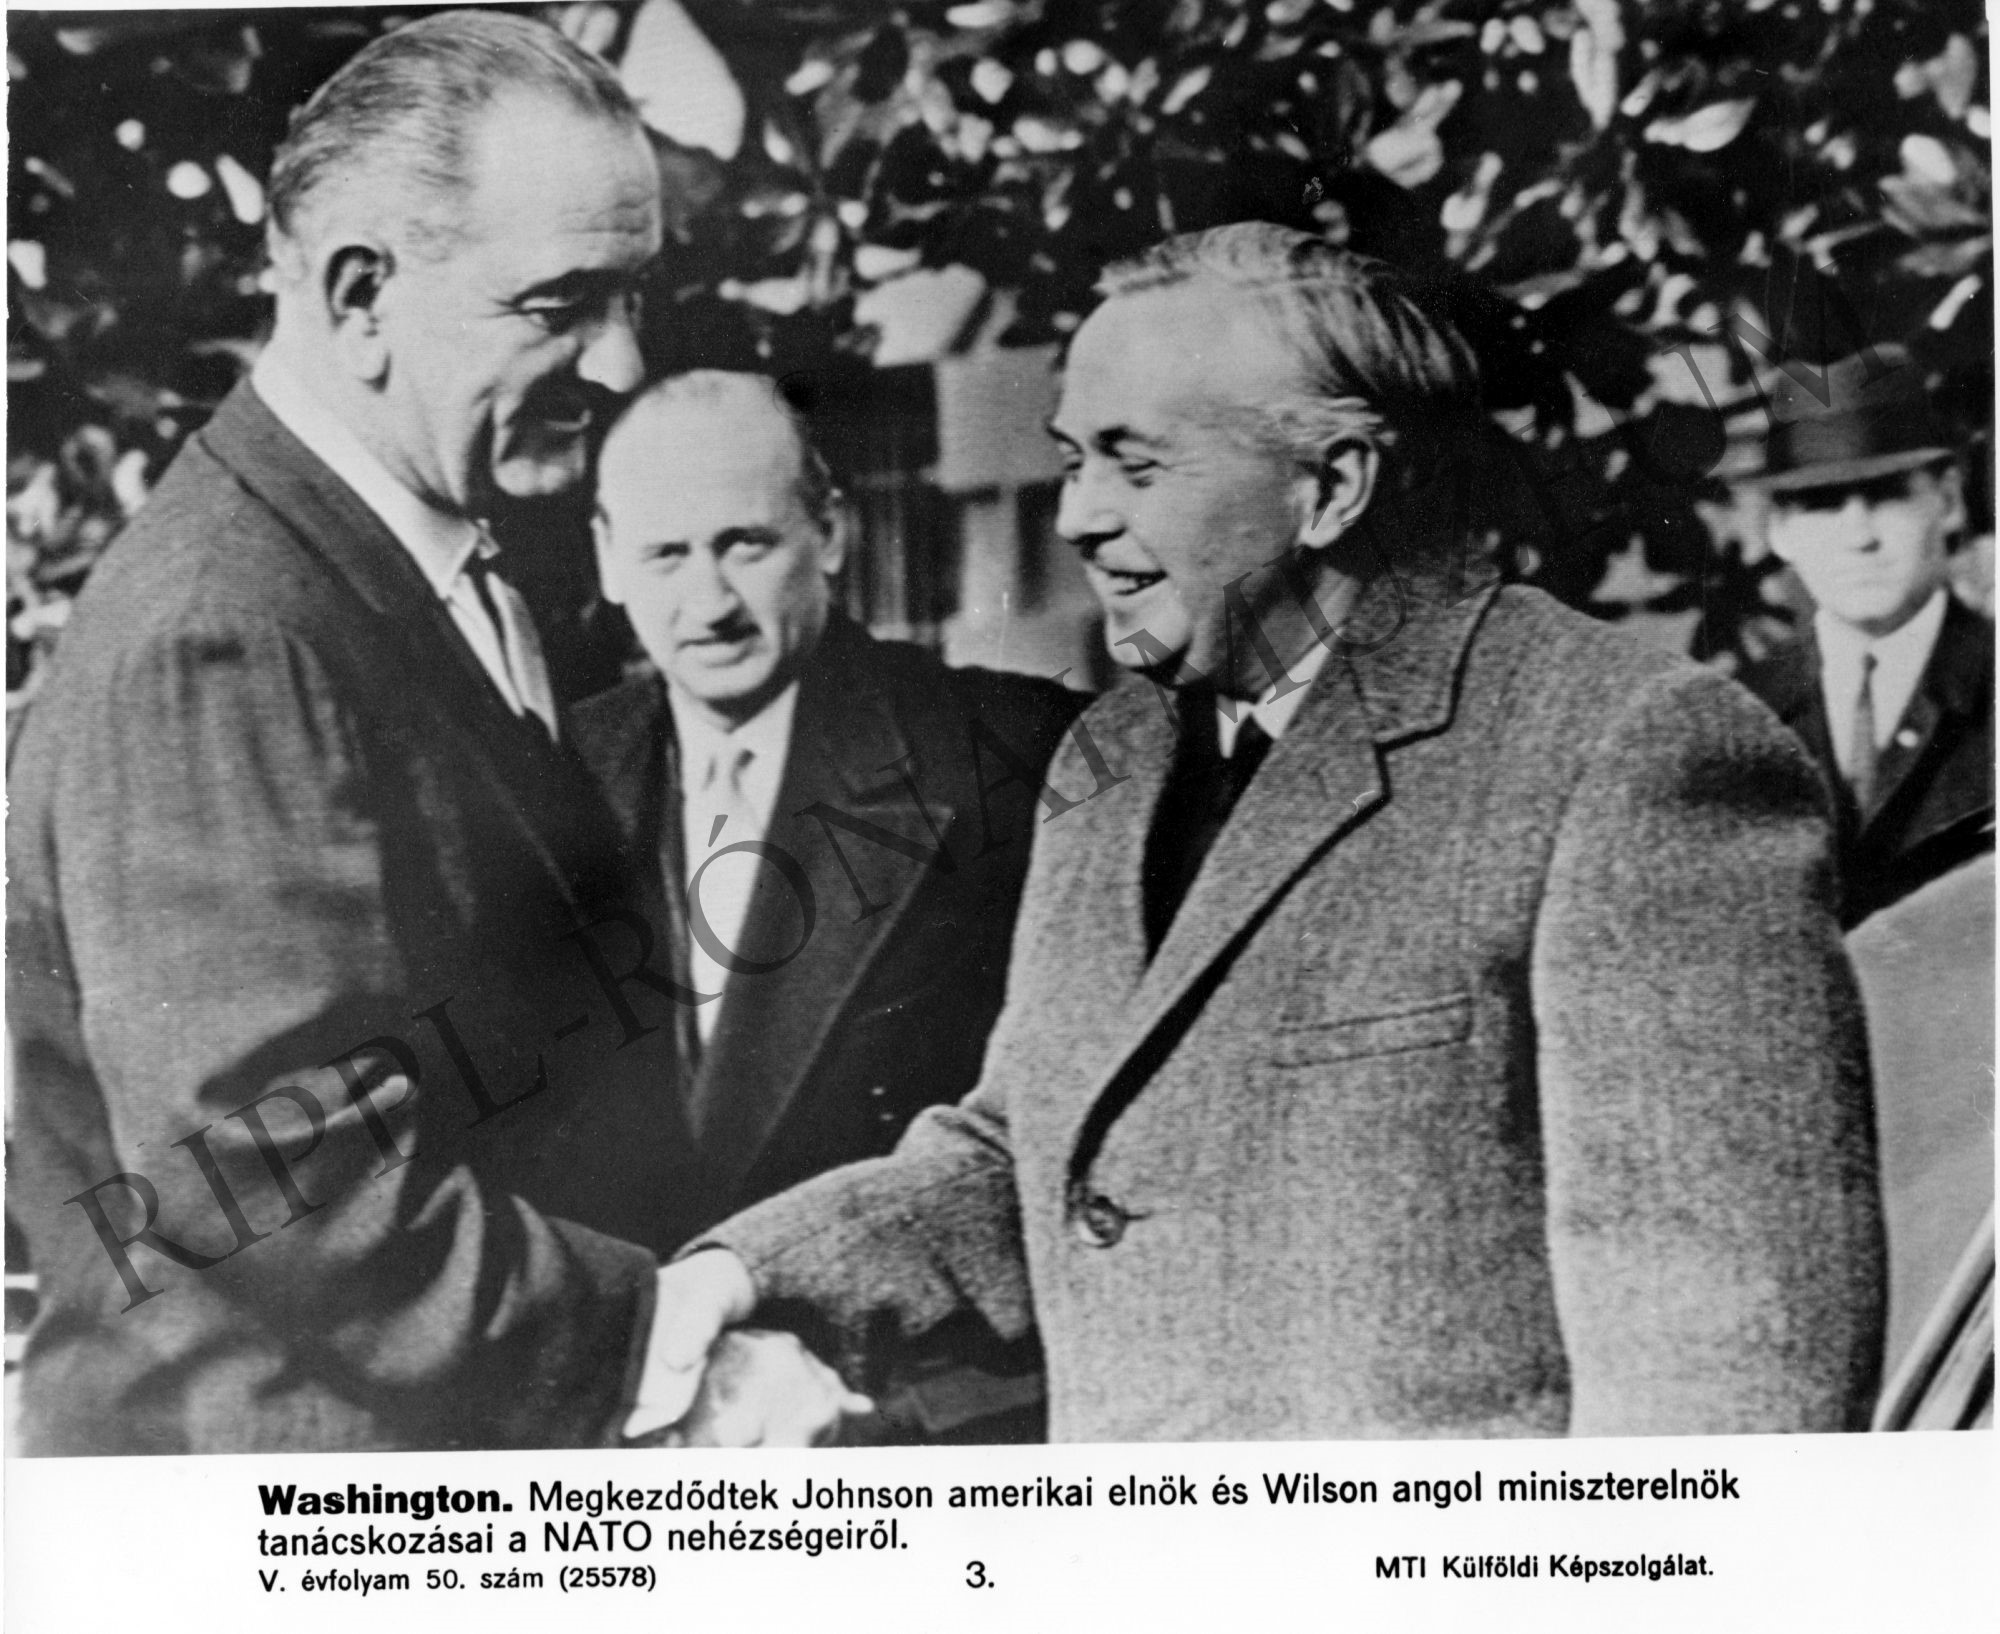 Megkezdődtek Johnson amerikai elnök és Wilson angol miniszterelnök tanácskozásai a NATO nehézségeiről. (Rippl-Rónai Múzeum CC BY-NC-SA)